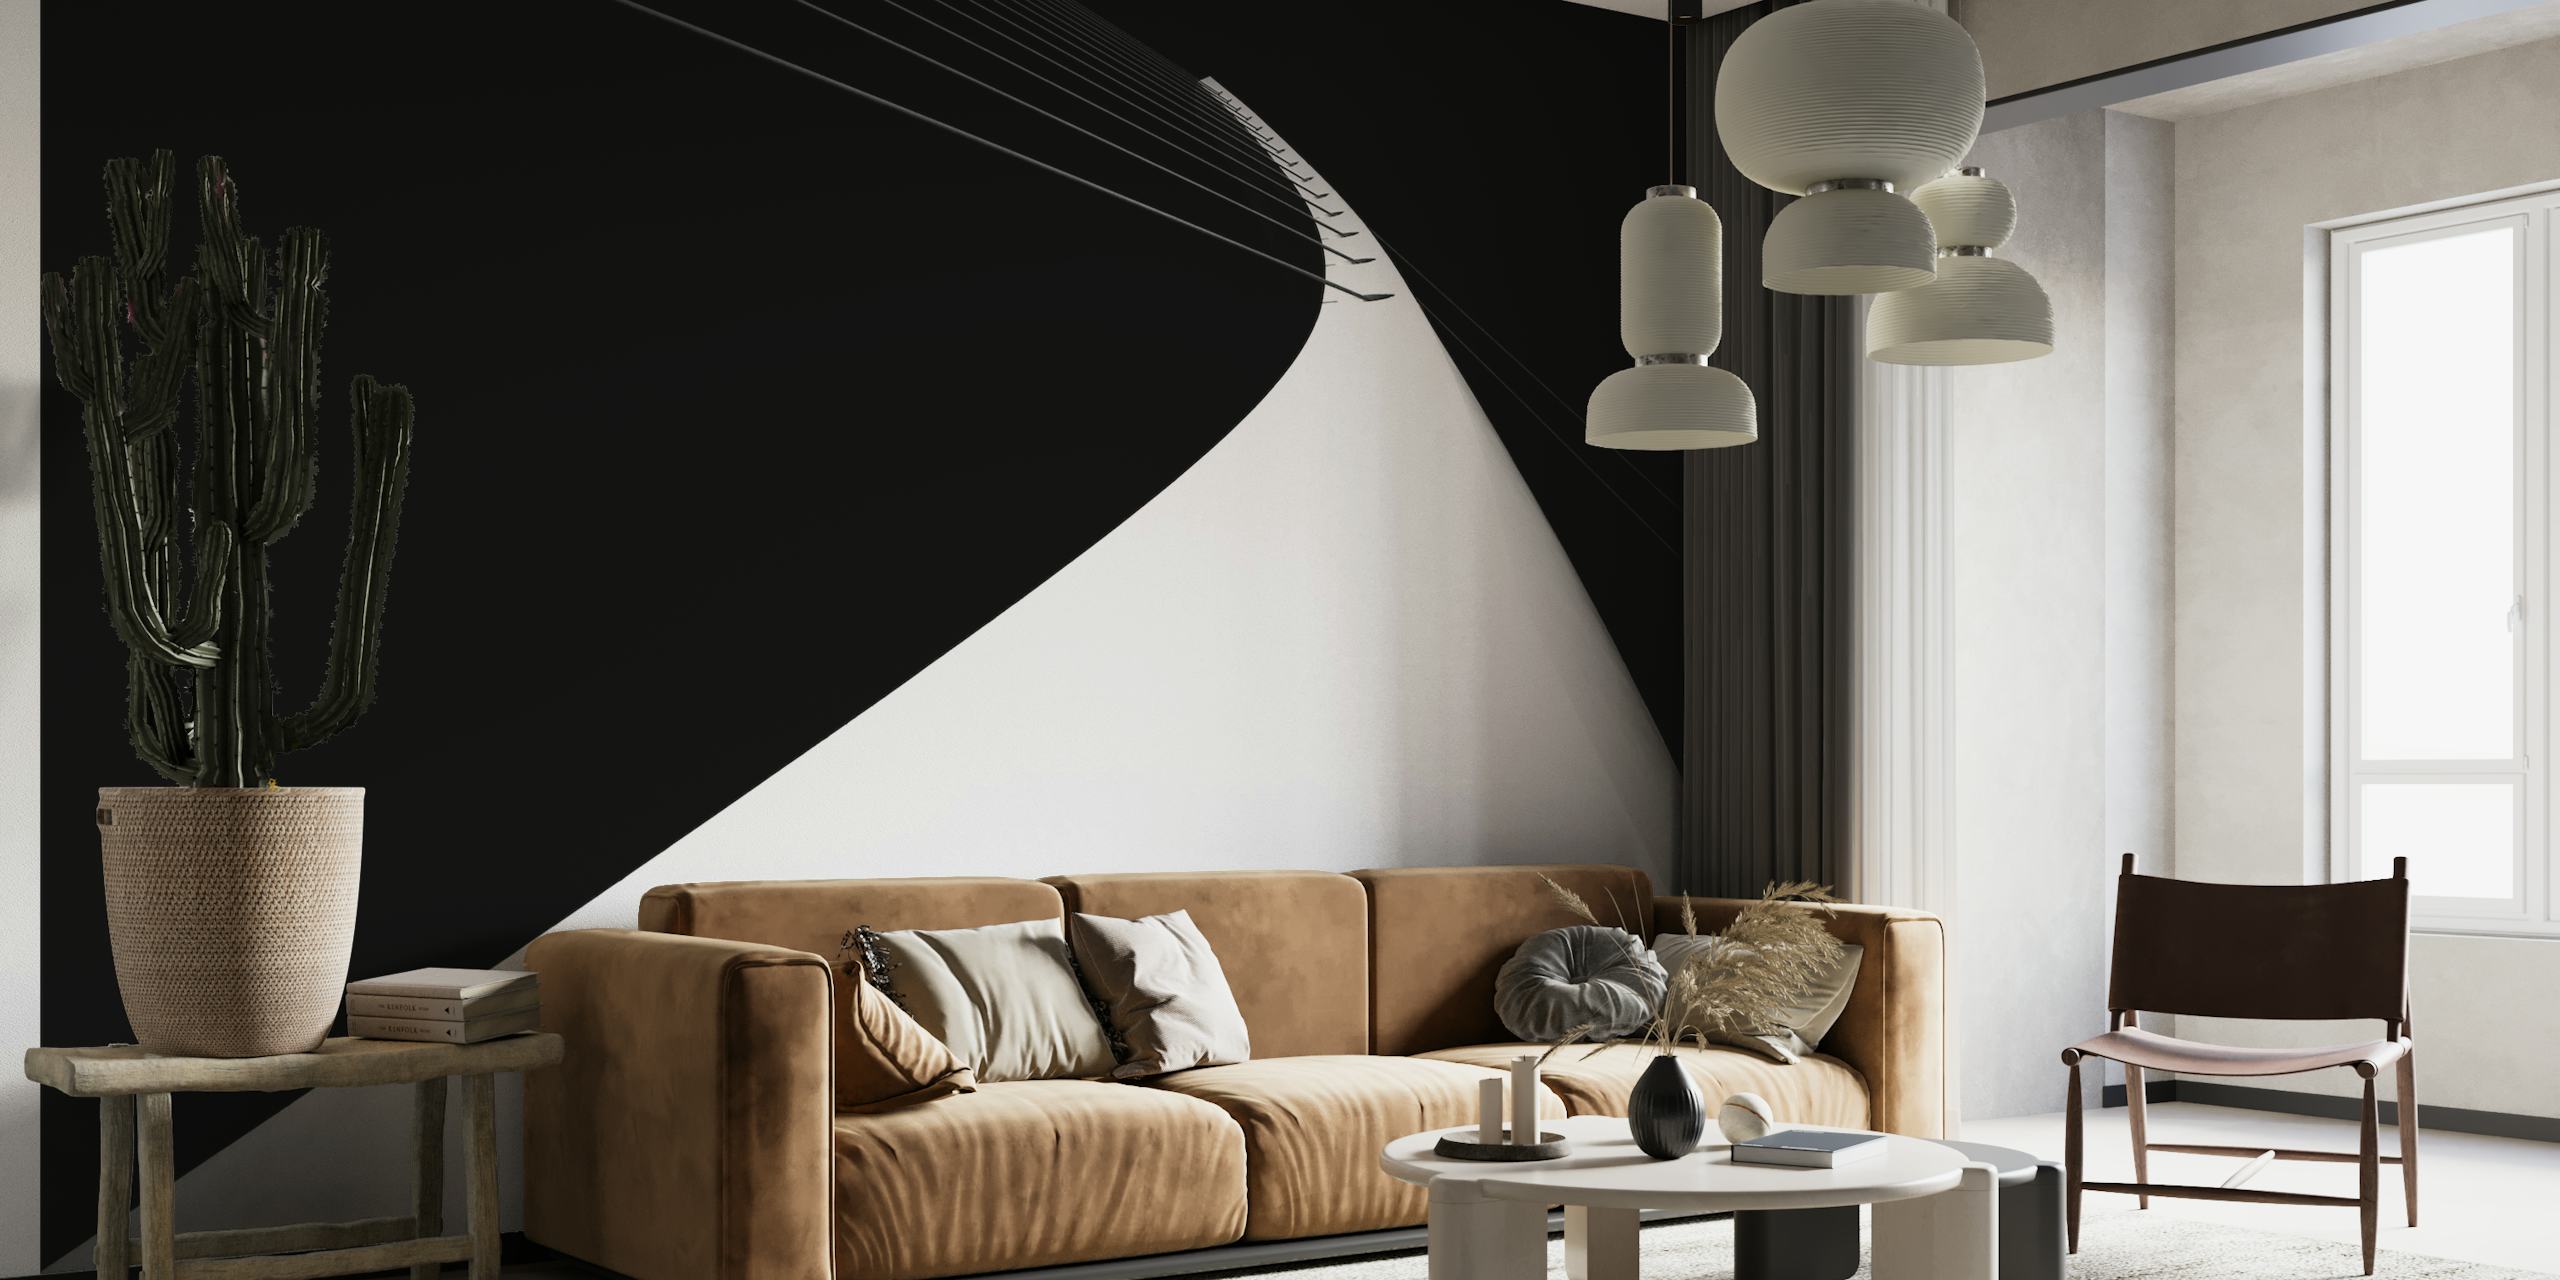 Mural en blanco y negro que representa un arco minimalista que se extiende hacia un cielo oscuro